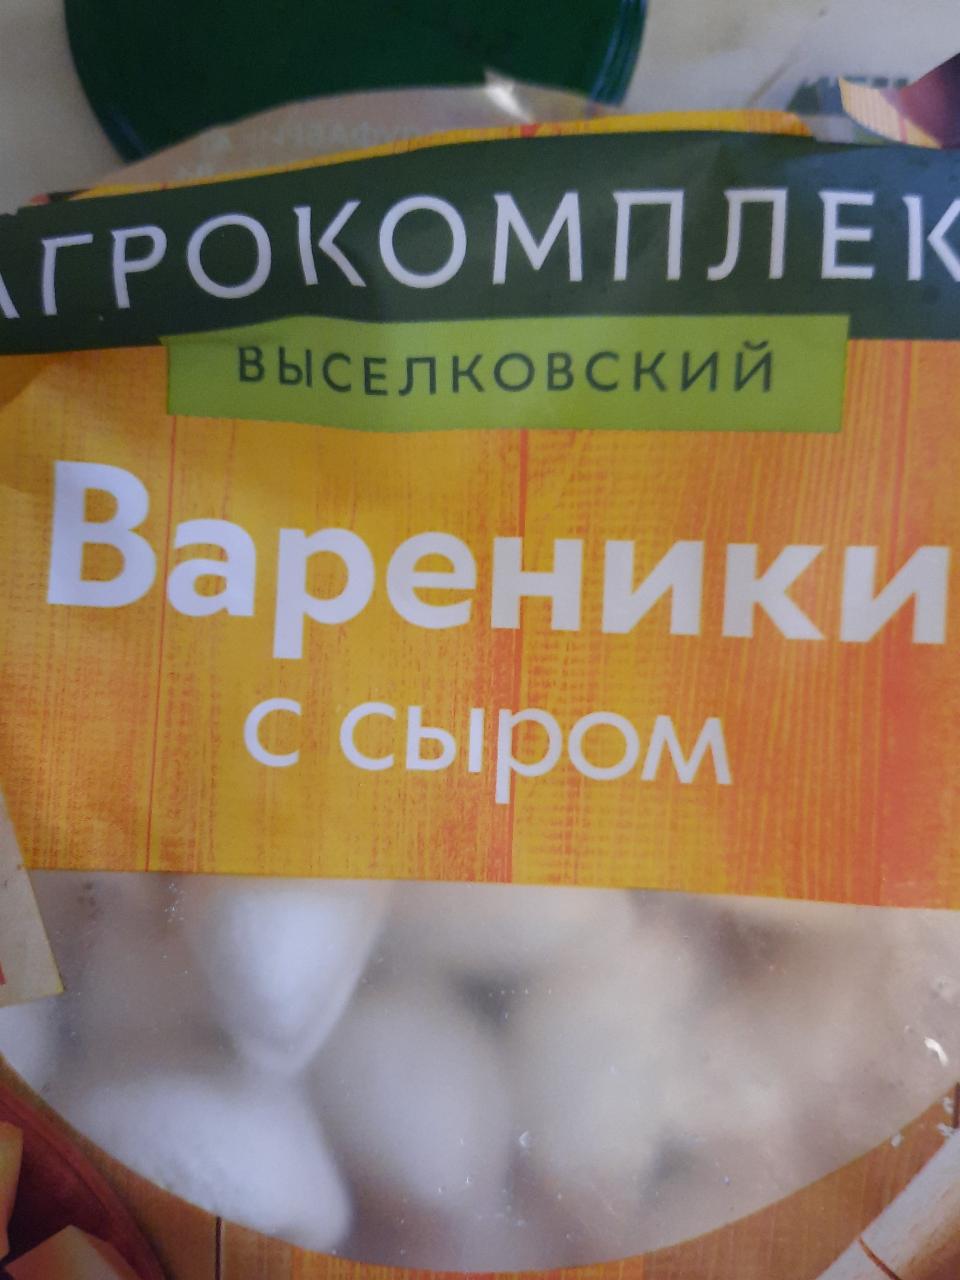 Фото - Вареники с сыром Агрокомплекс выселковский